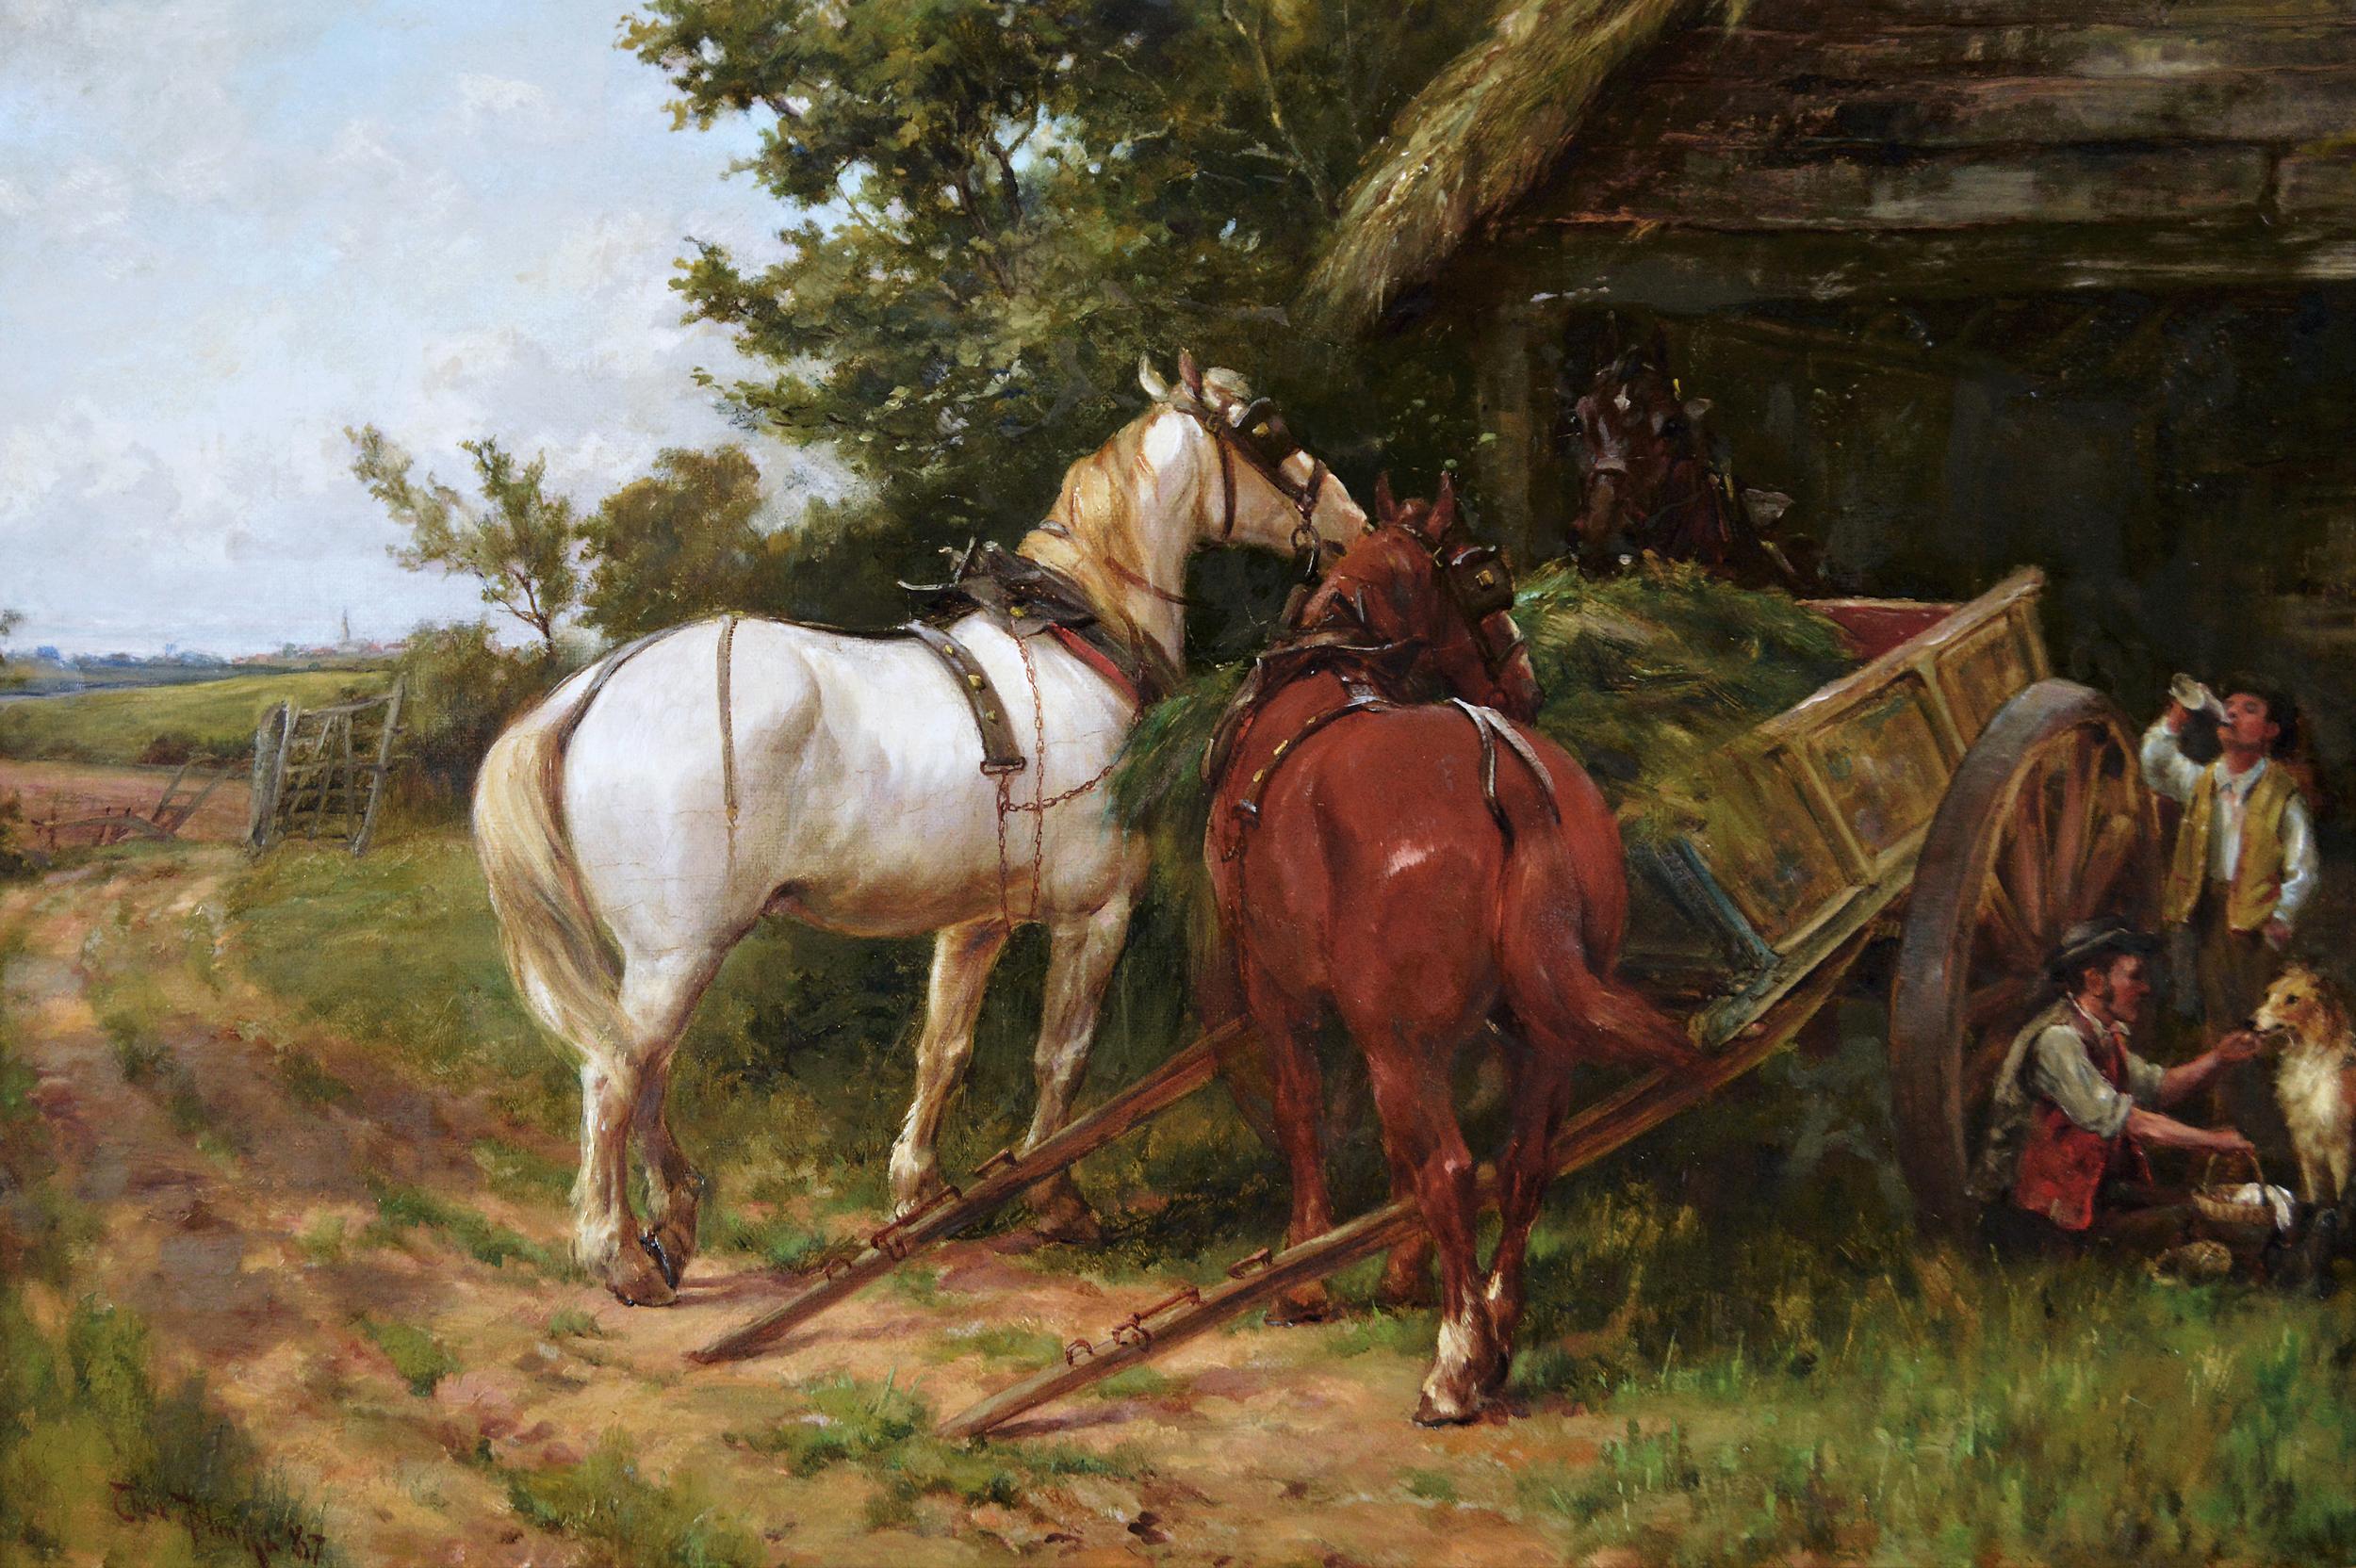 Peinture à l'huile du XIXe siècle représentant des chevaux près d'une grange, avec des personnages et un chien - Painting de Thomas Blinks